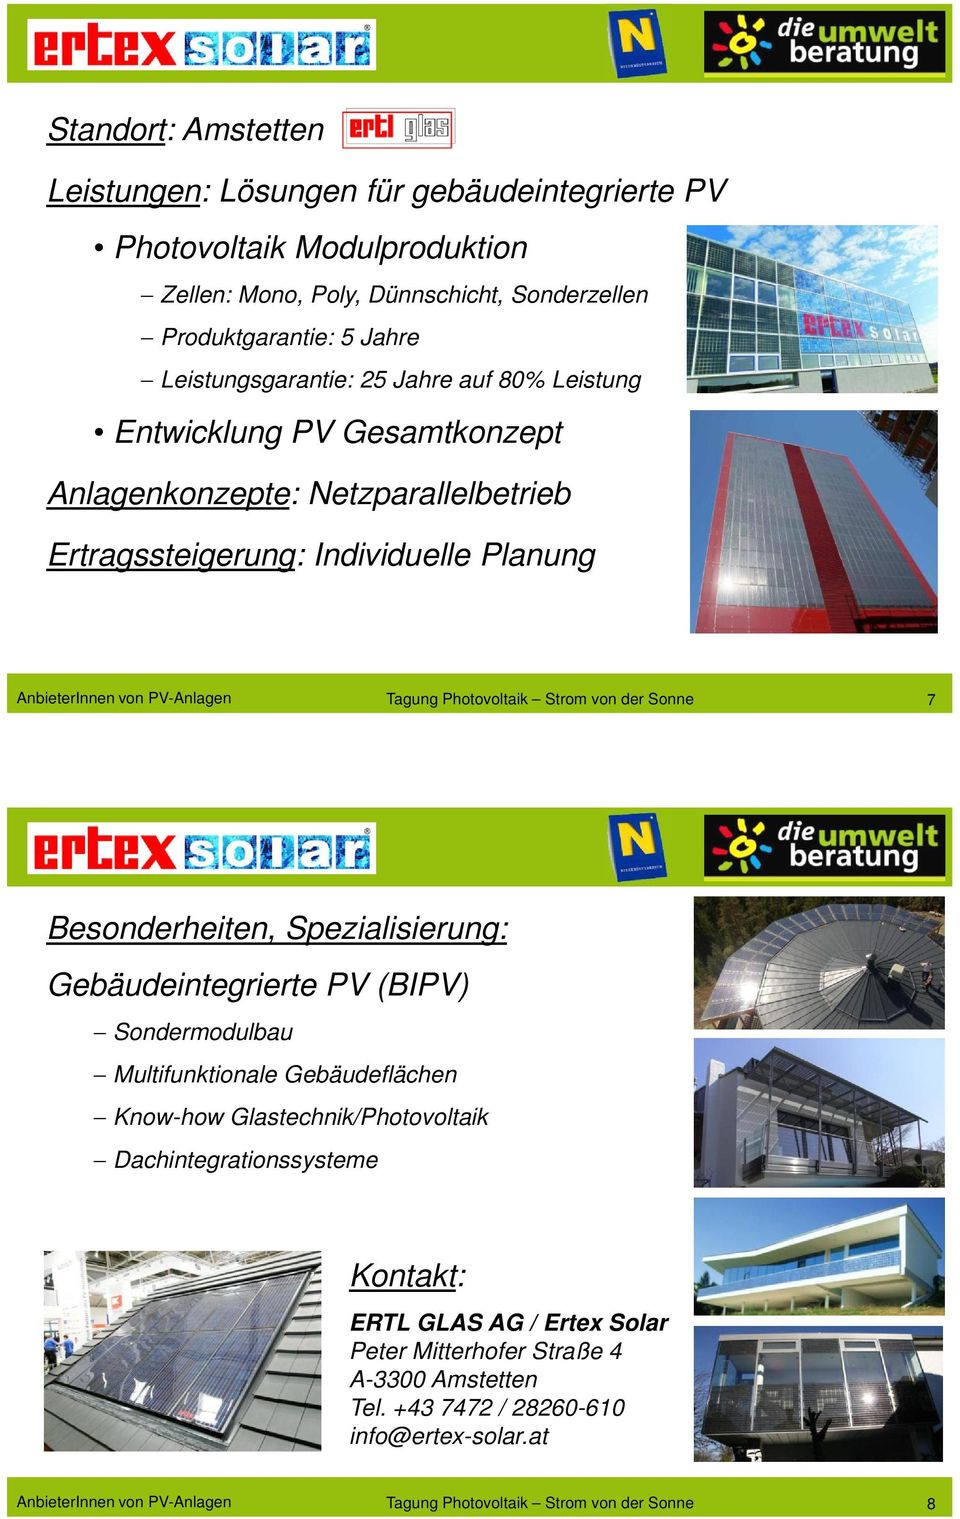 Photovoltaik Strom von der Sonne 7 Gebäudeintegrierte PV (BIPV) Sondermodulbau Multifunktionale Gebäudeflächen Know-how Glastechnik/Photovoltaik